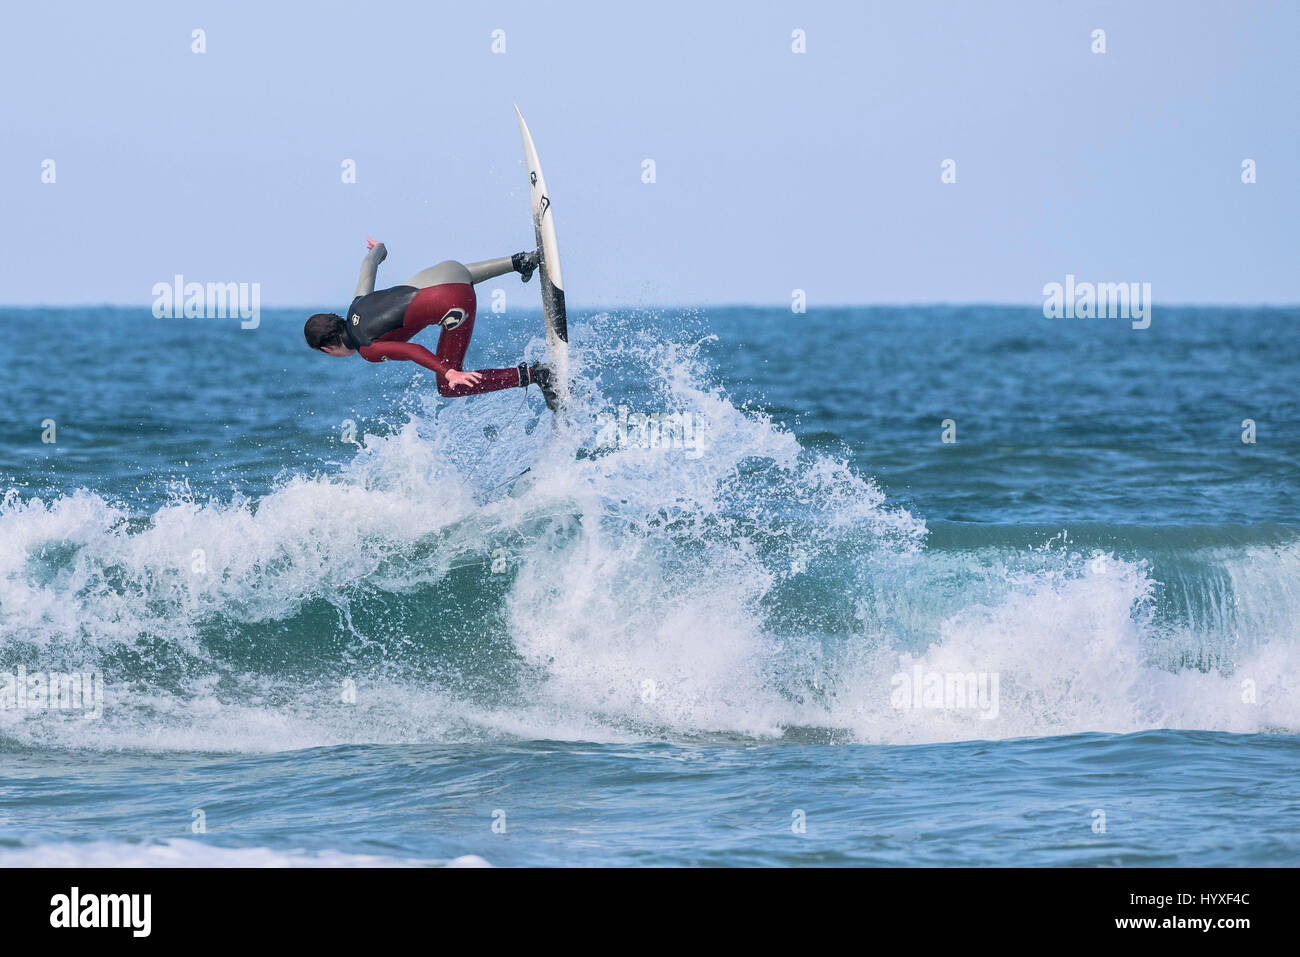 UK Surfen Surfer körperliche Aktivität Wassersport Skill spektakuläre Action Freizeit Lifestyle Freizeit Hobby Gnarly Stockfoto